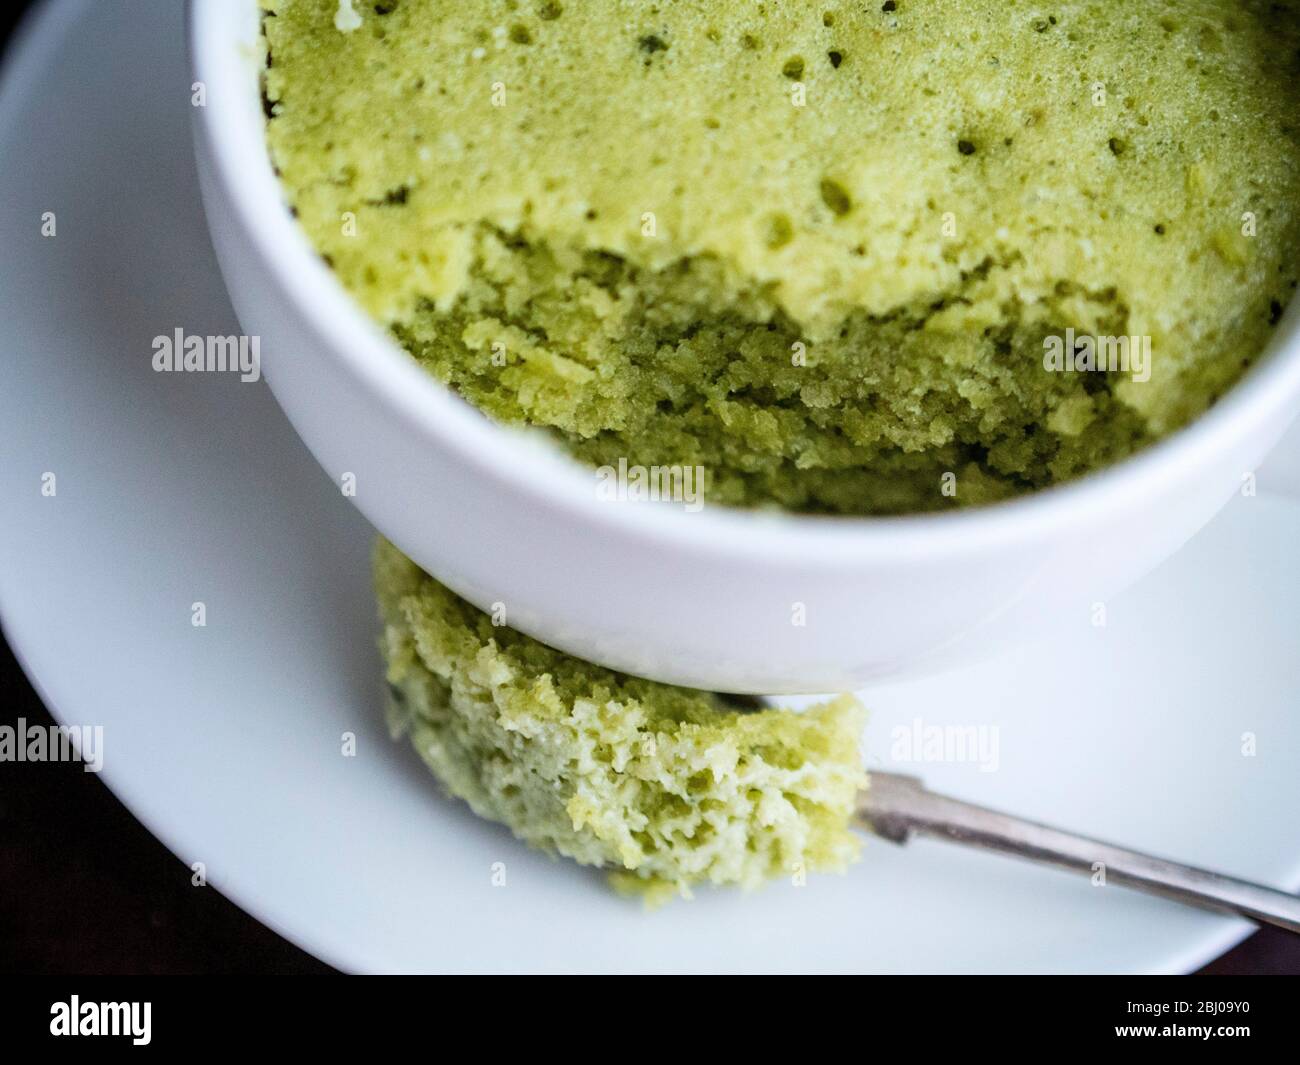 Deliziosa torta semplice fatta con mandorle macinate e polvere di tè verde matcha, cotta in una tazza in un forno a microonde. Foto Stock